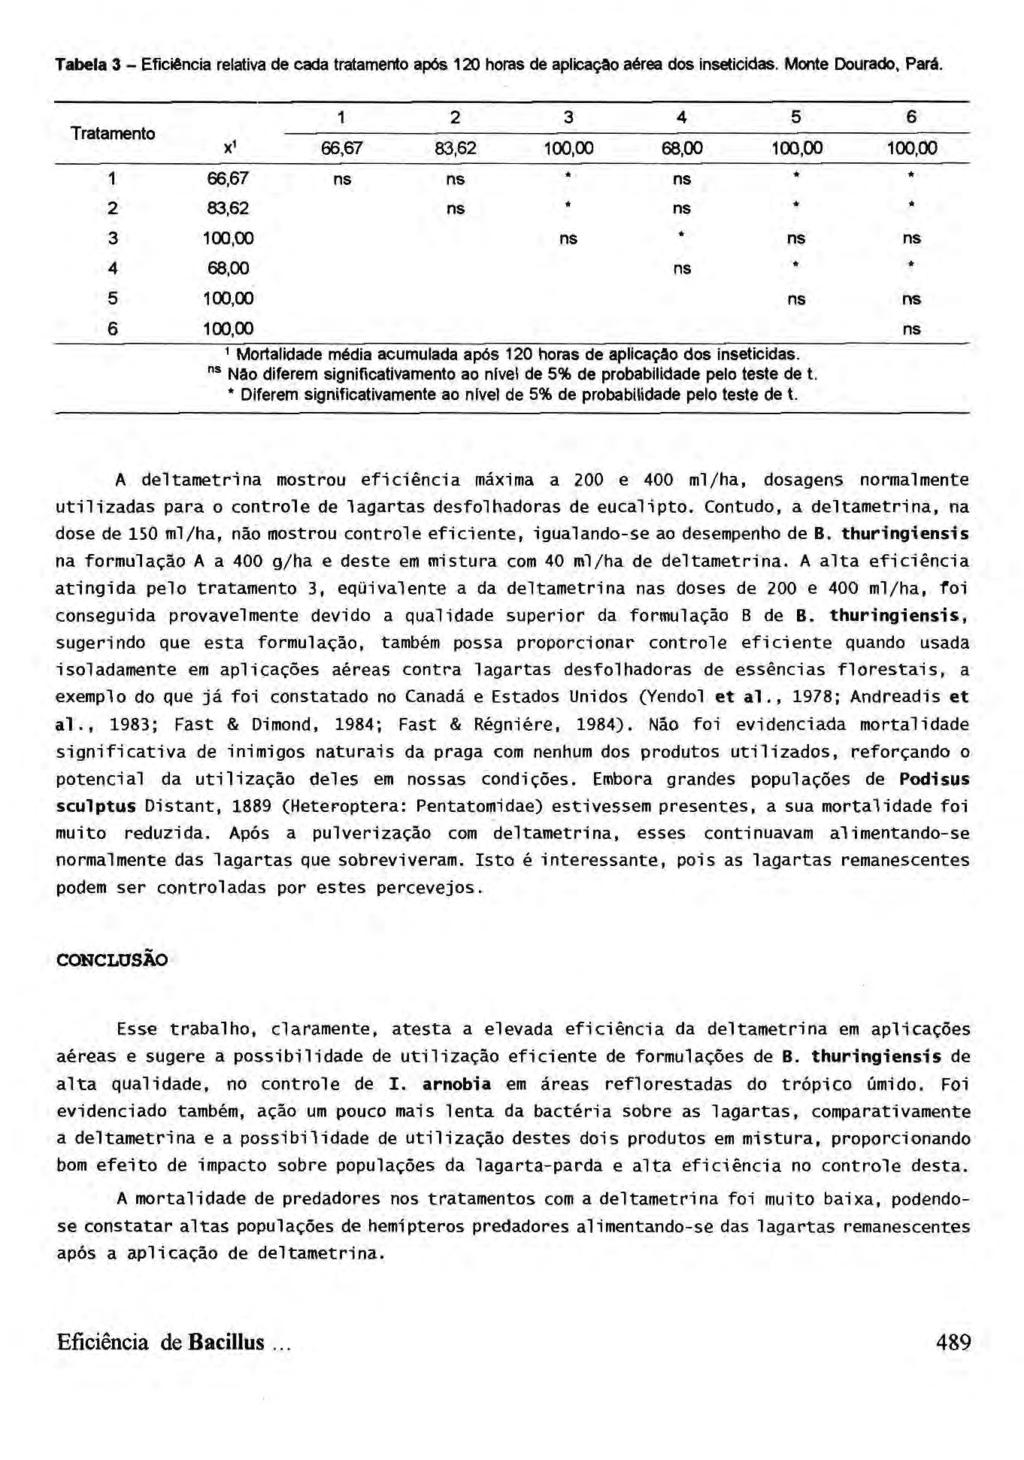 Tabela 3 - Eficiência relativa de cada tratamento após 120 horas de aplicação aérea dos inseticidas. Monte Dourado, Pará.